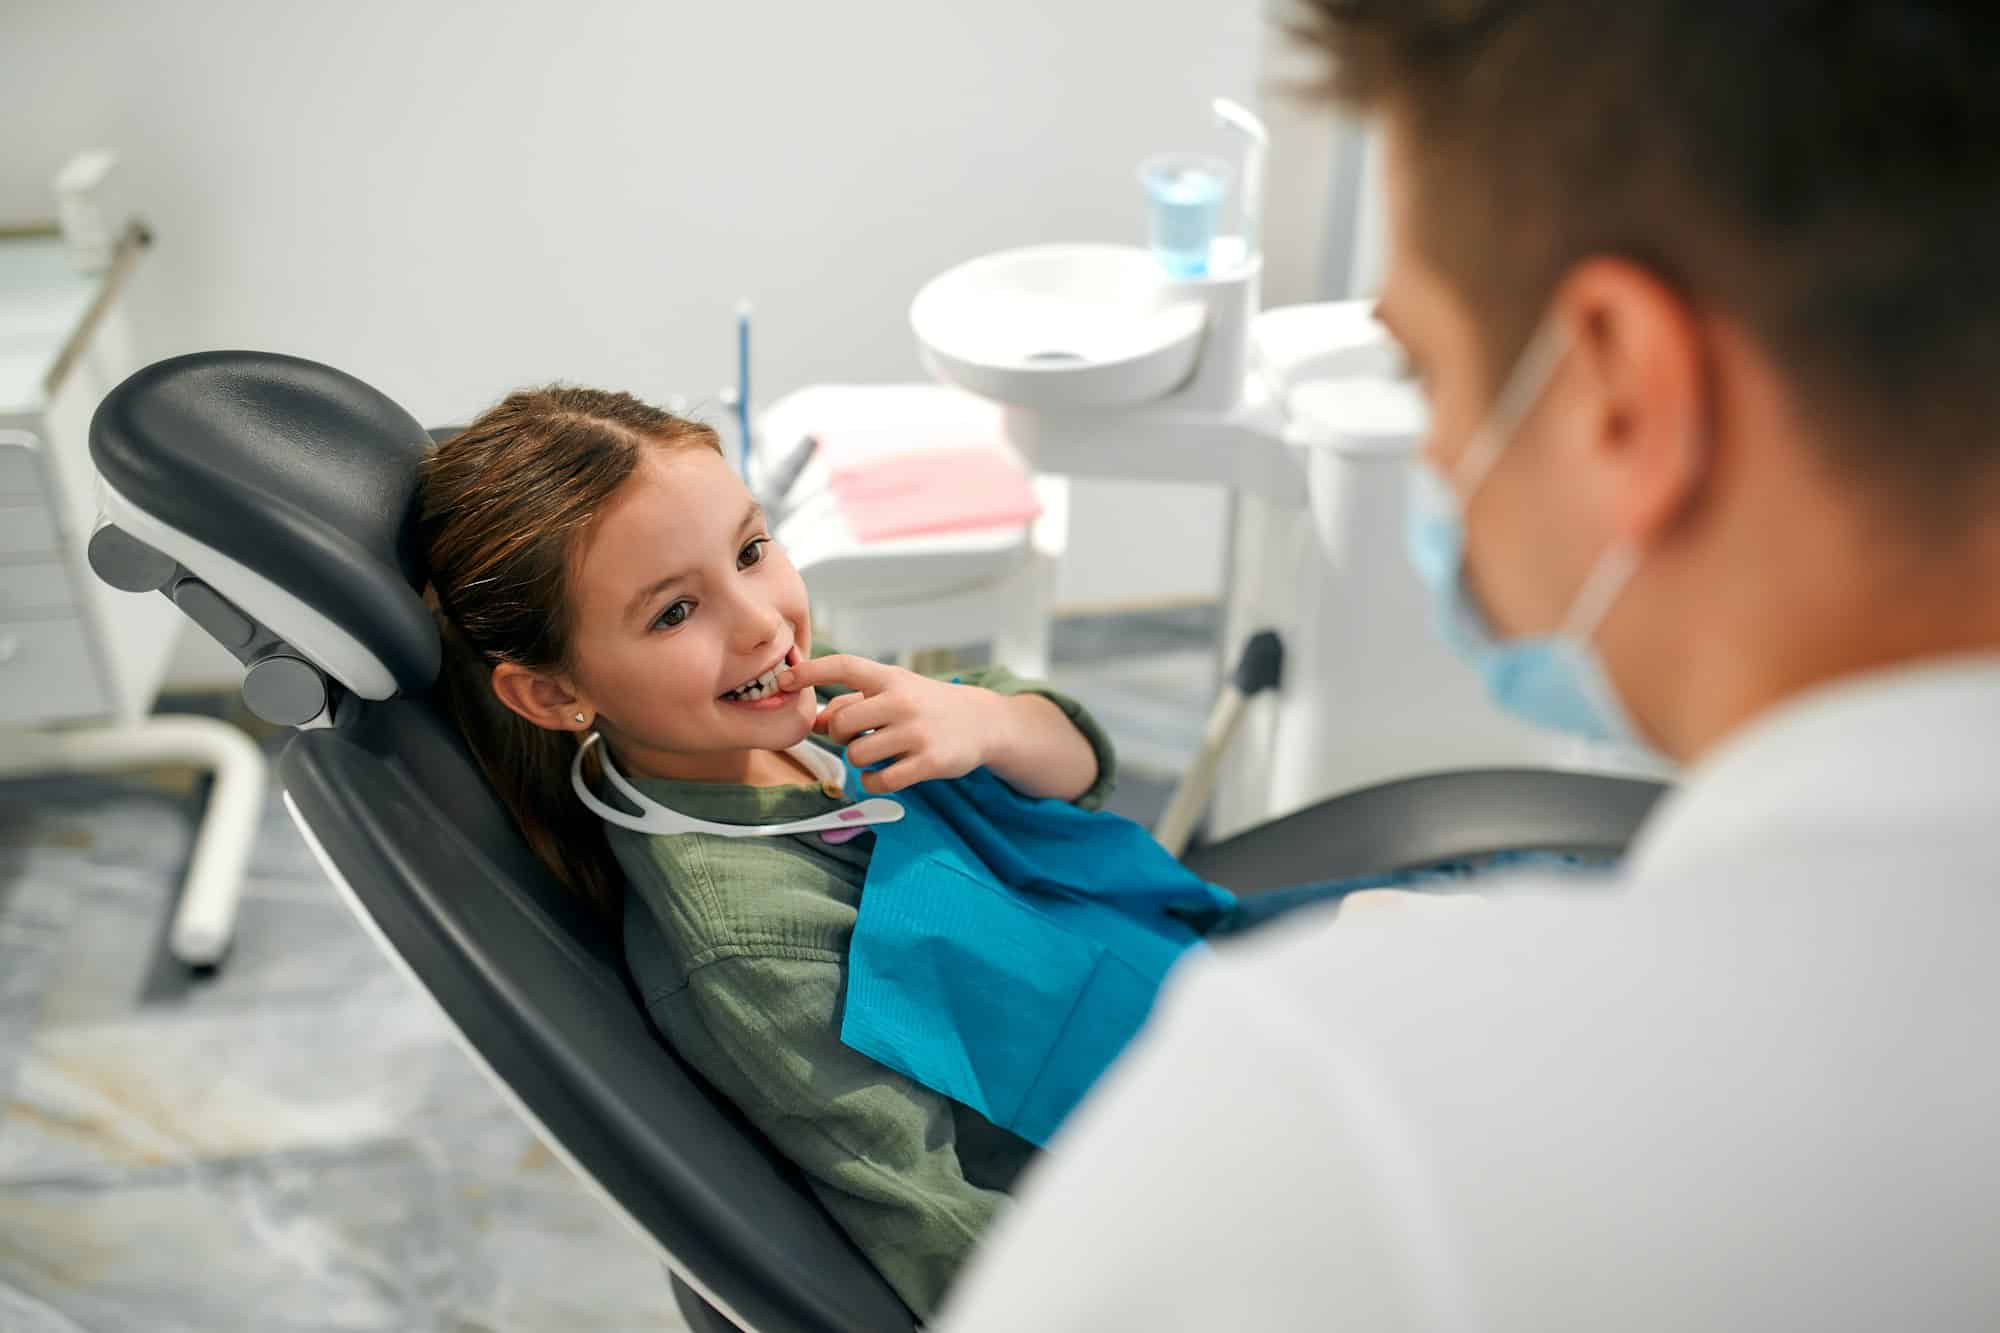 Les cliniques dentaires offrent-elles des services de dentisterie pédiatrique ?